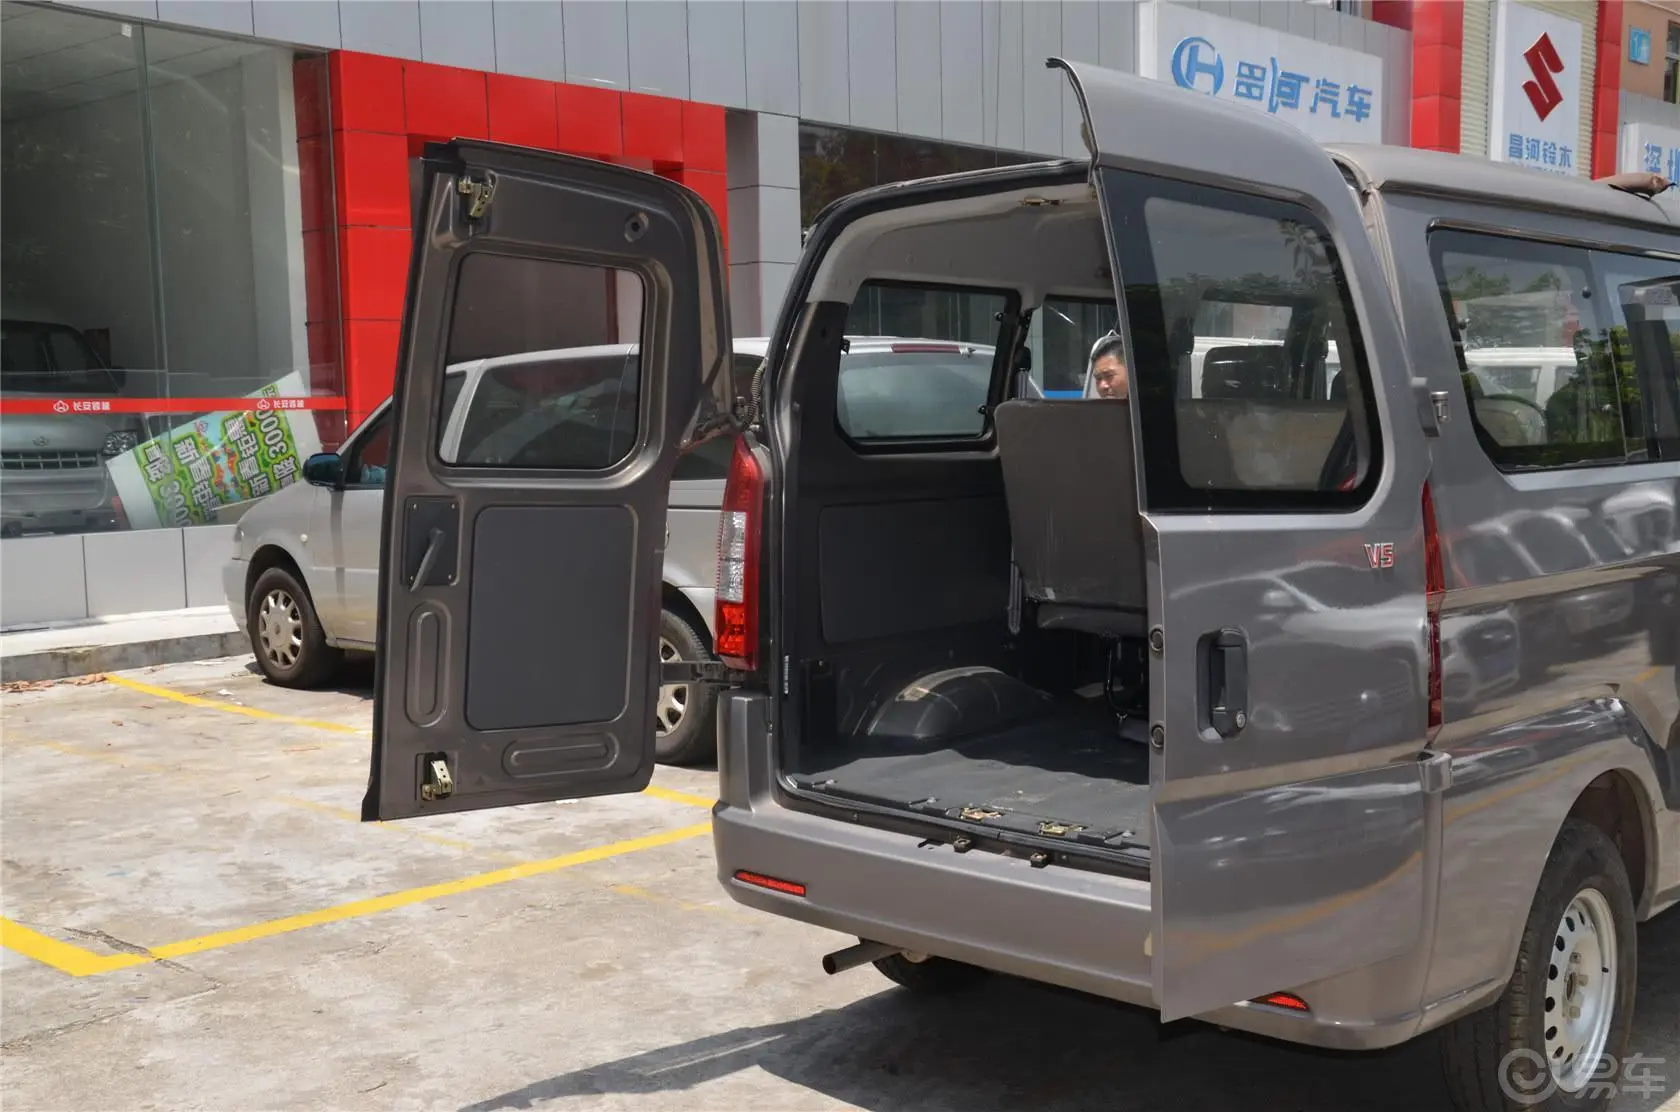 长安V51.5L 手动 DK15 标准型行李厢开口范围